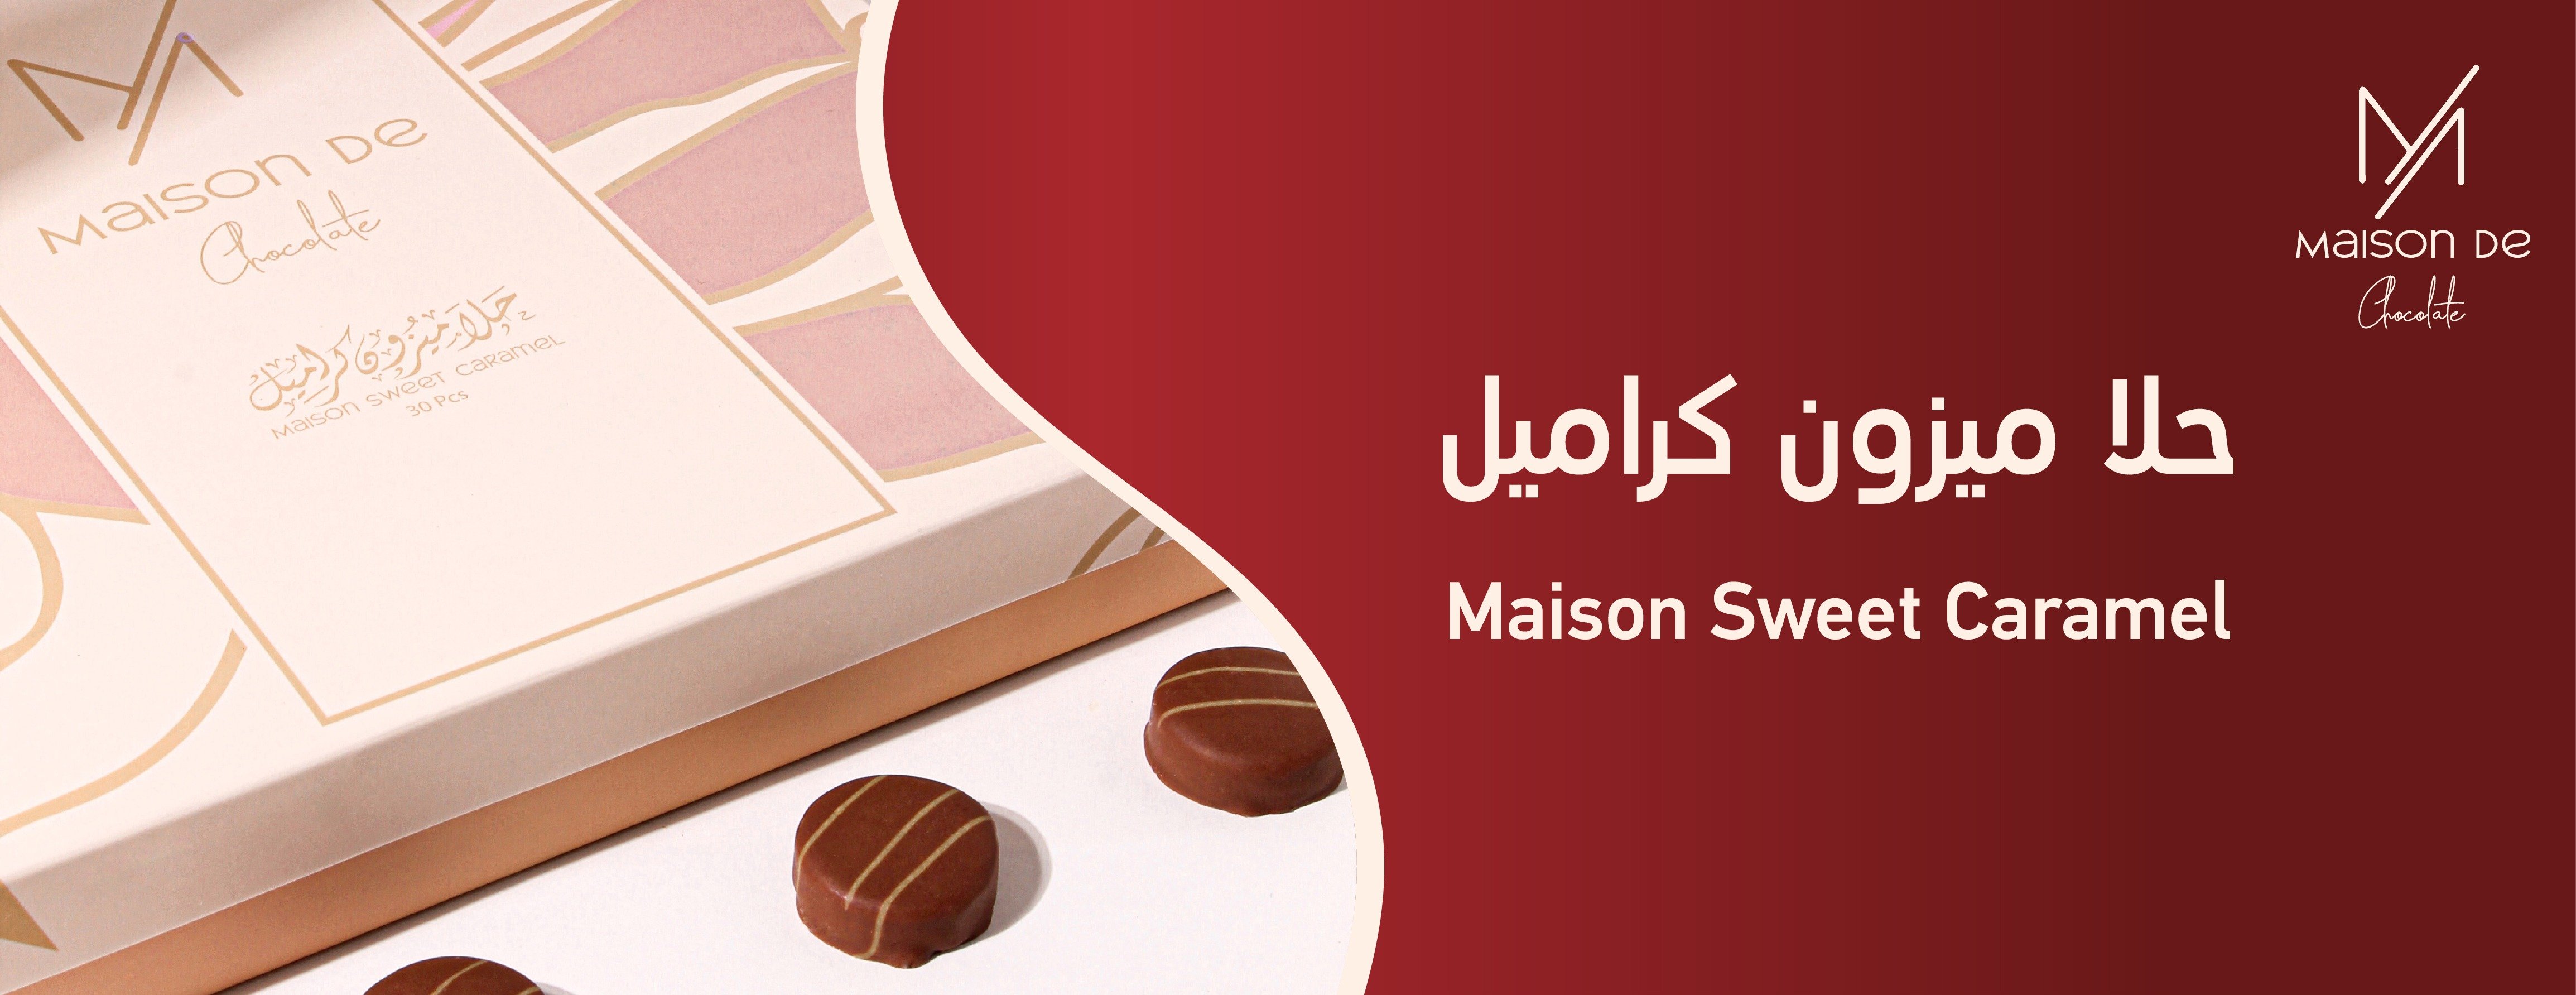 ميزون دي شوكلت - Maison De Chocolate image-slider-1